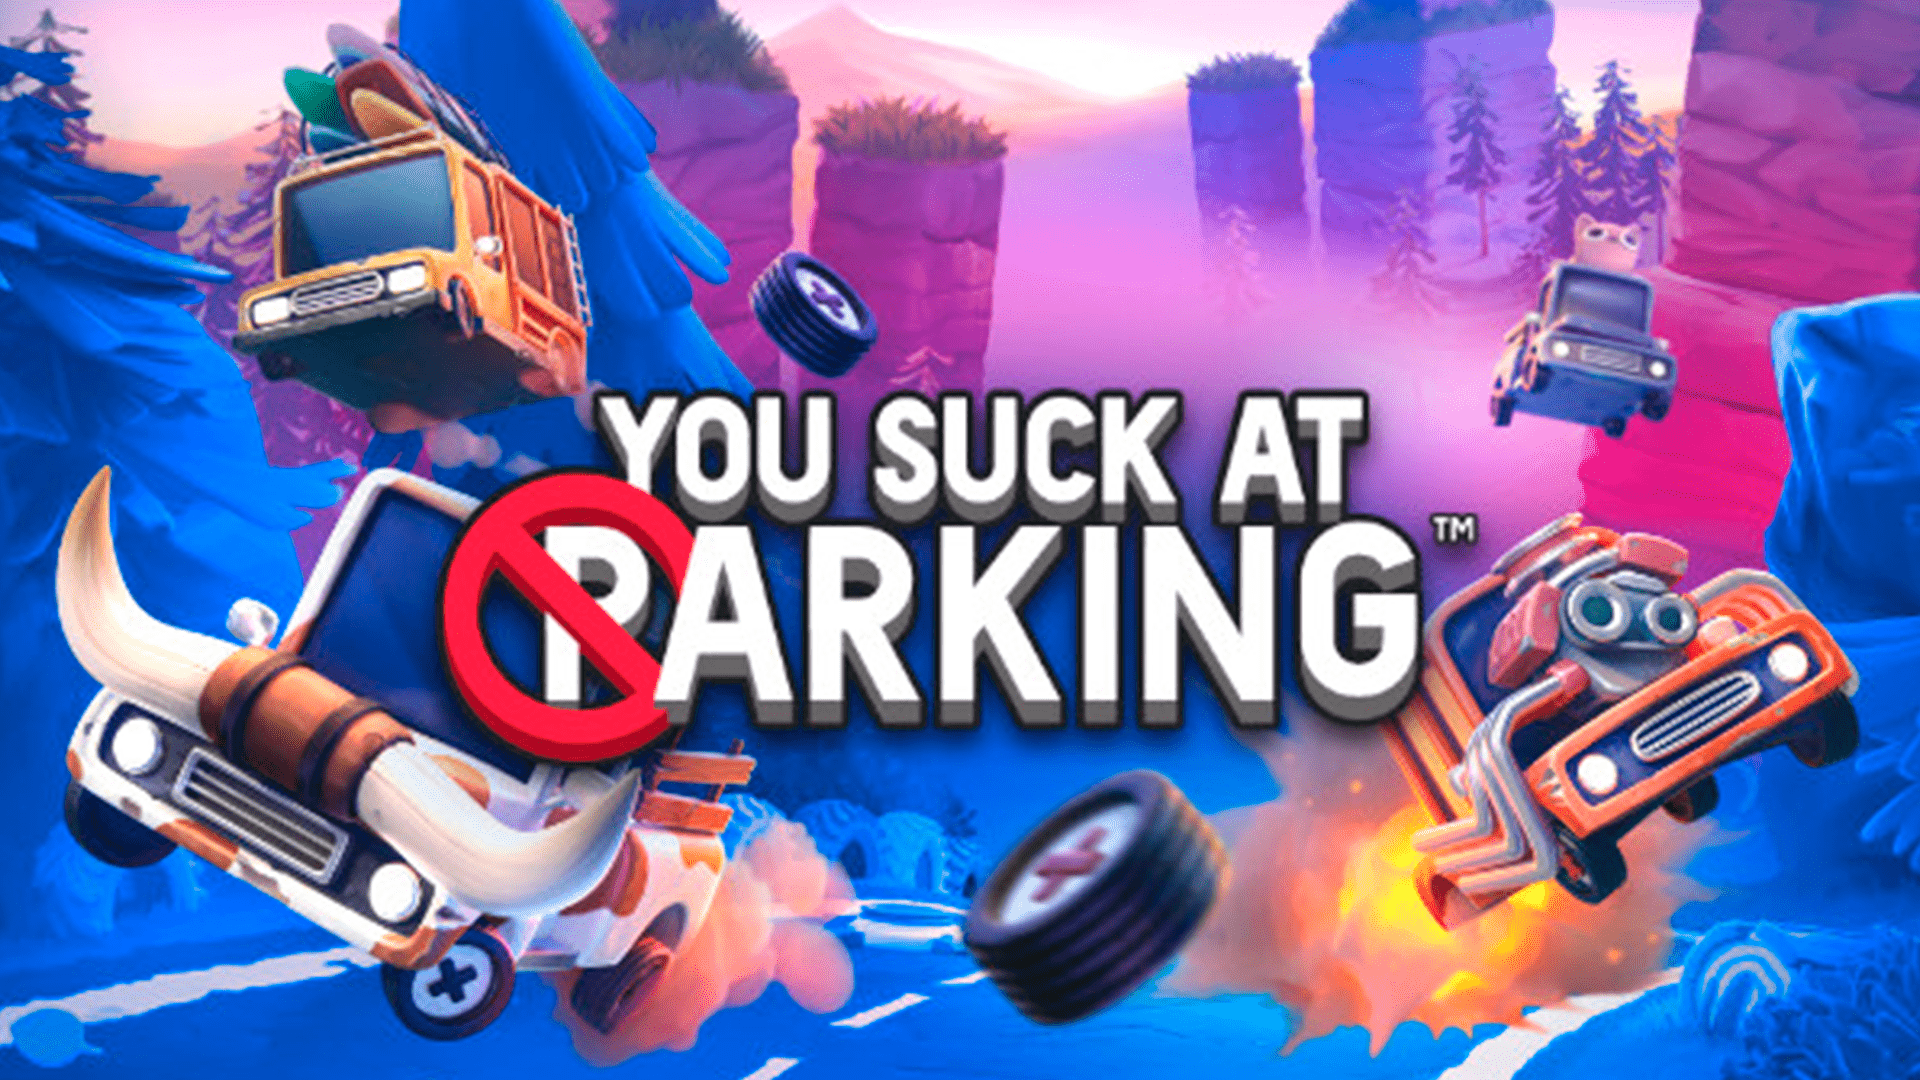 ОТСТОЙНО ПАРКУЕШЬСЯ! ➔ You Suck at Parking